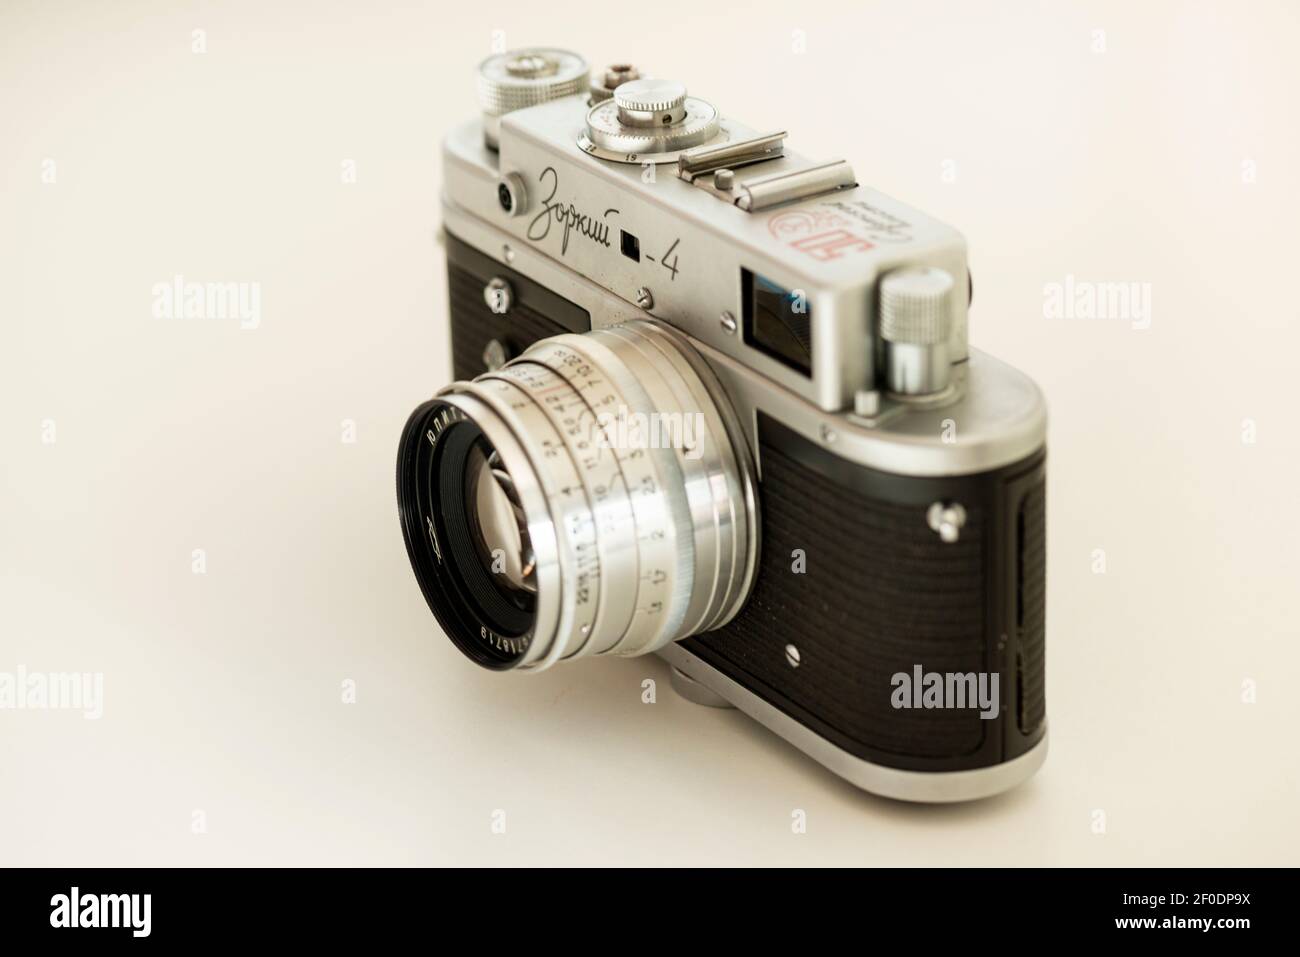 Vista di argento russo Zorki 4 vecchia fotocamera manuale d'argento vintage come classico concetto di fotografia retrò. Foto Stock